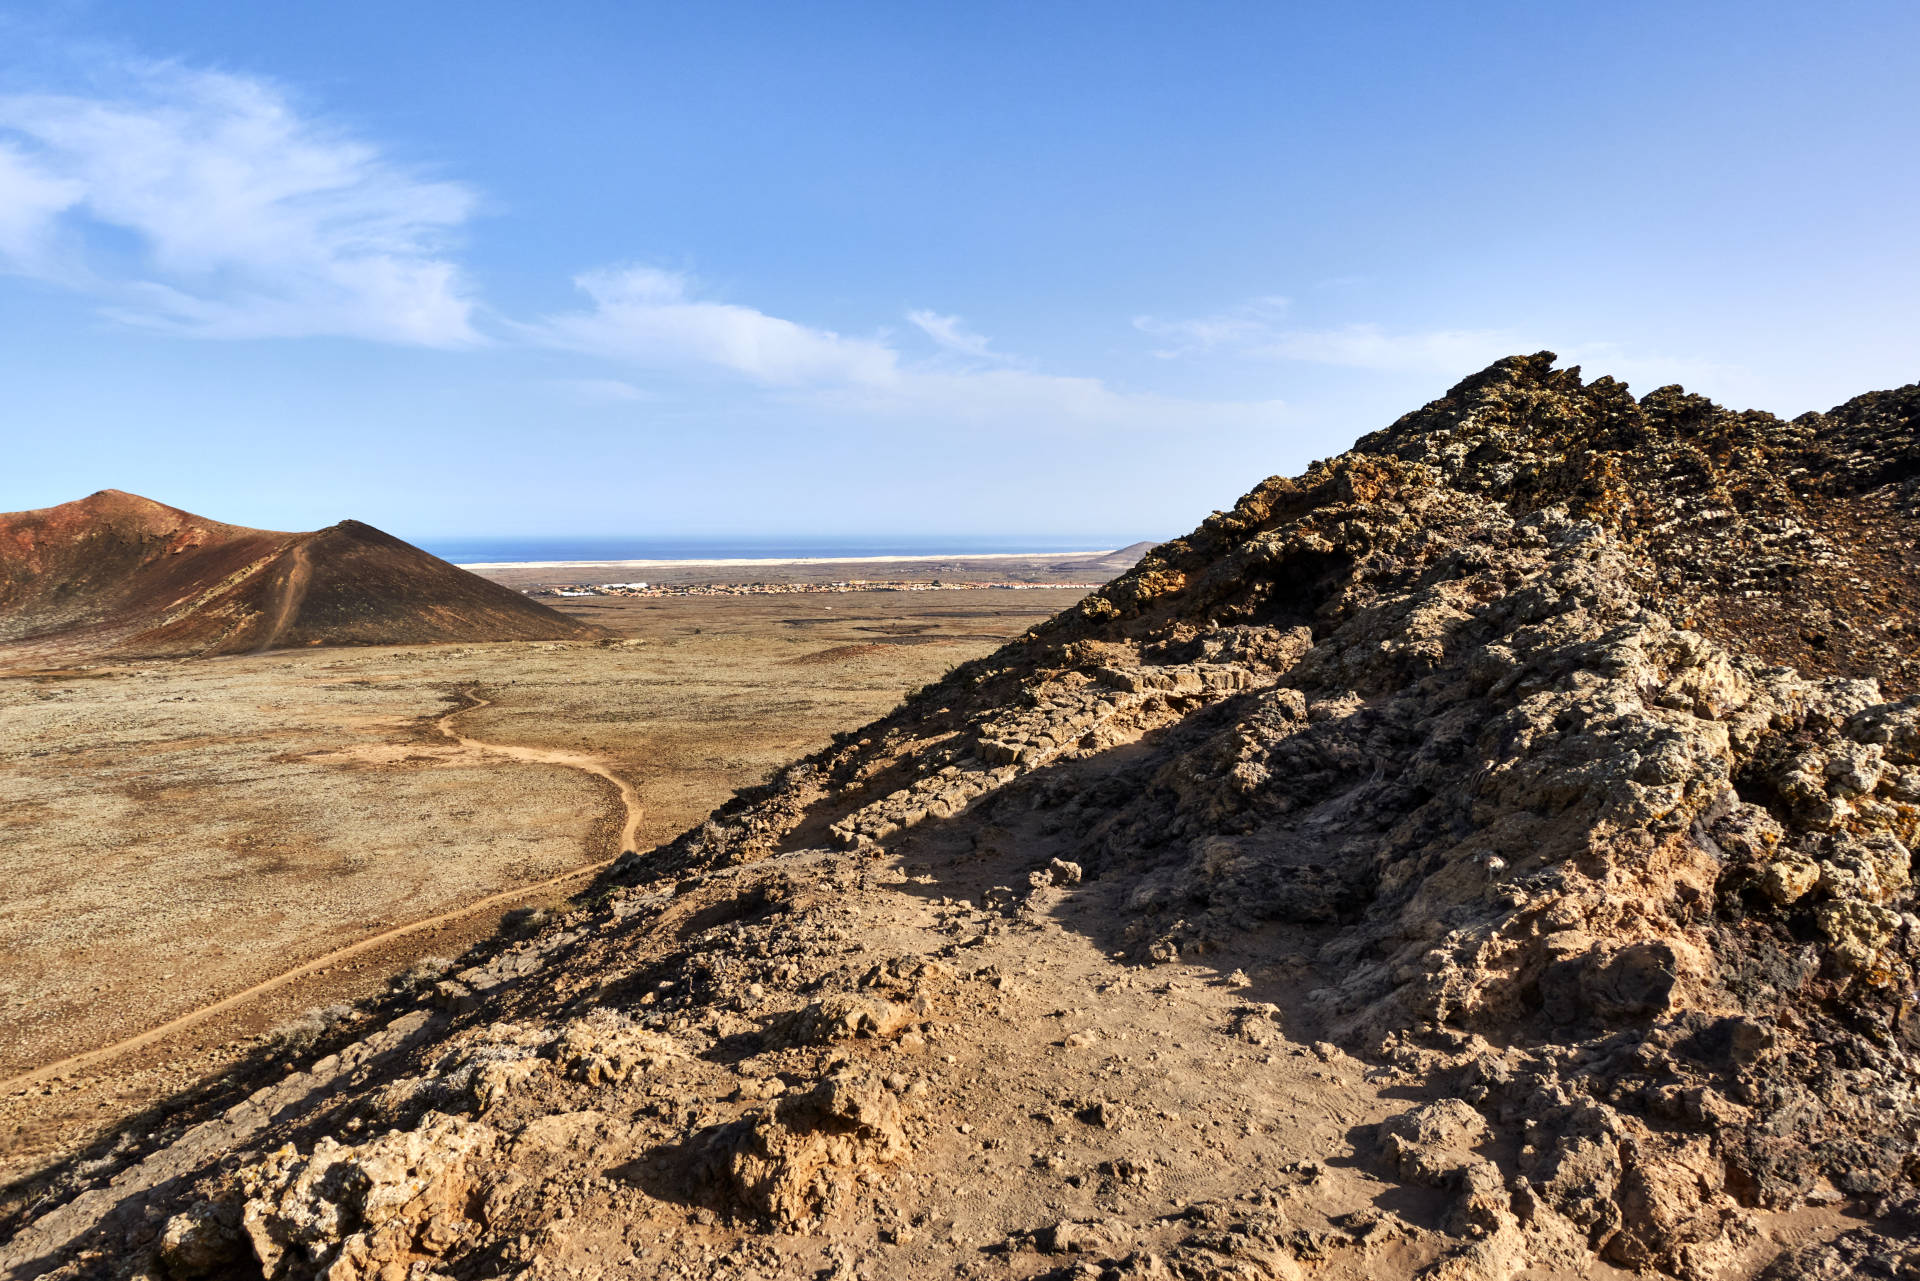 Südlich des Vulkankomplex Caldera de Rebanada (231 m), Caldera Encantada (235 m) und Las Calderas (249 m) die Dünen von El Jable.